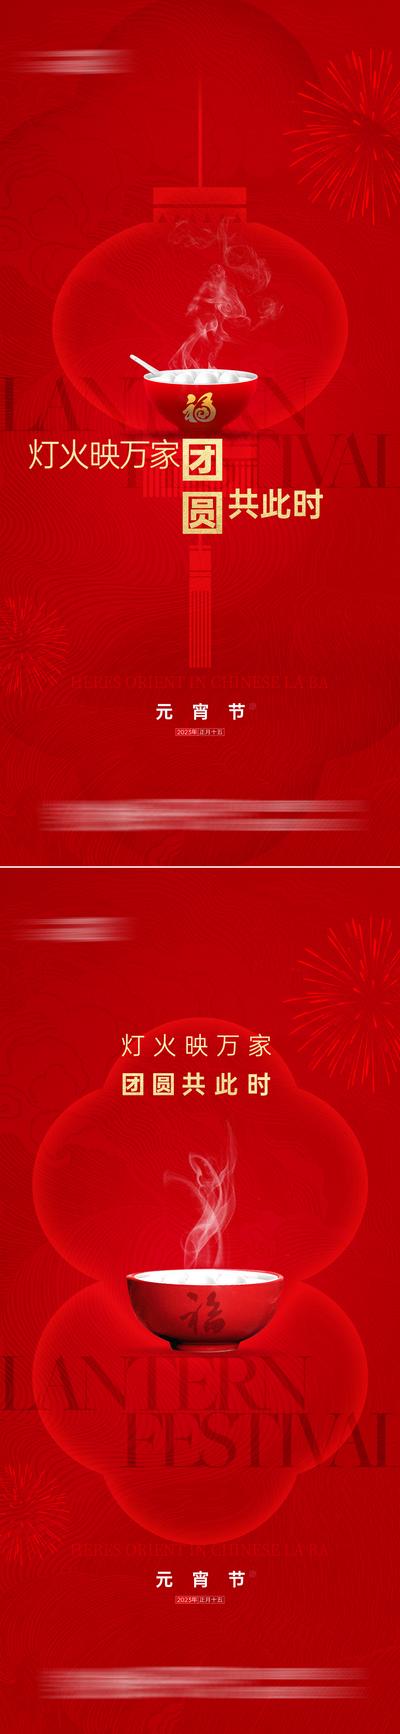 南门网 海报 地产 传统节日 春节 除夕 腊月 初一至初七 元宵节 年俗 民俗 系列